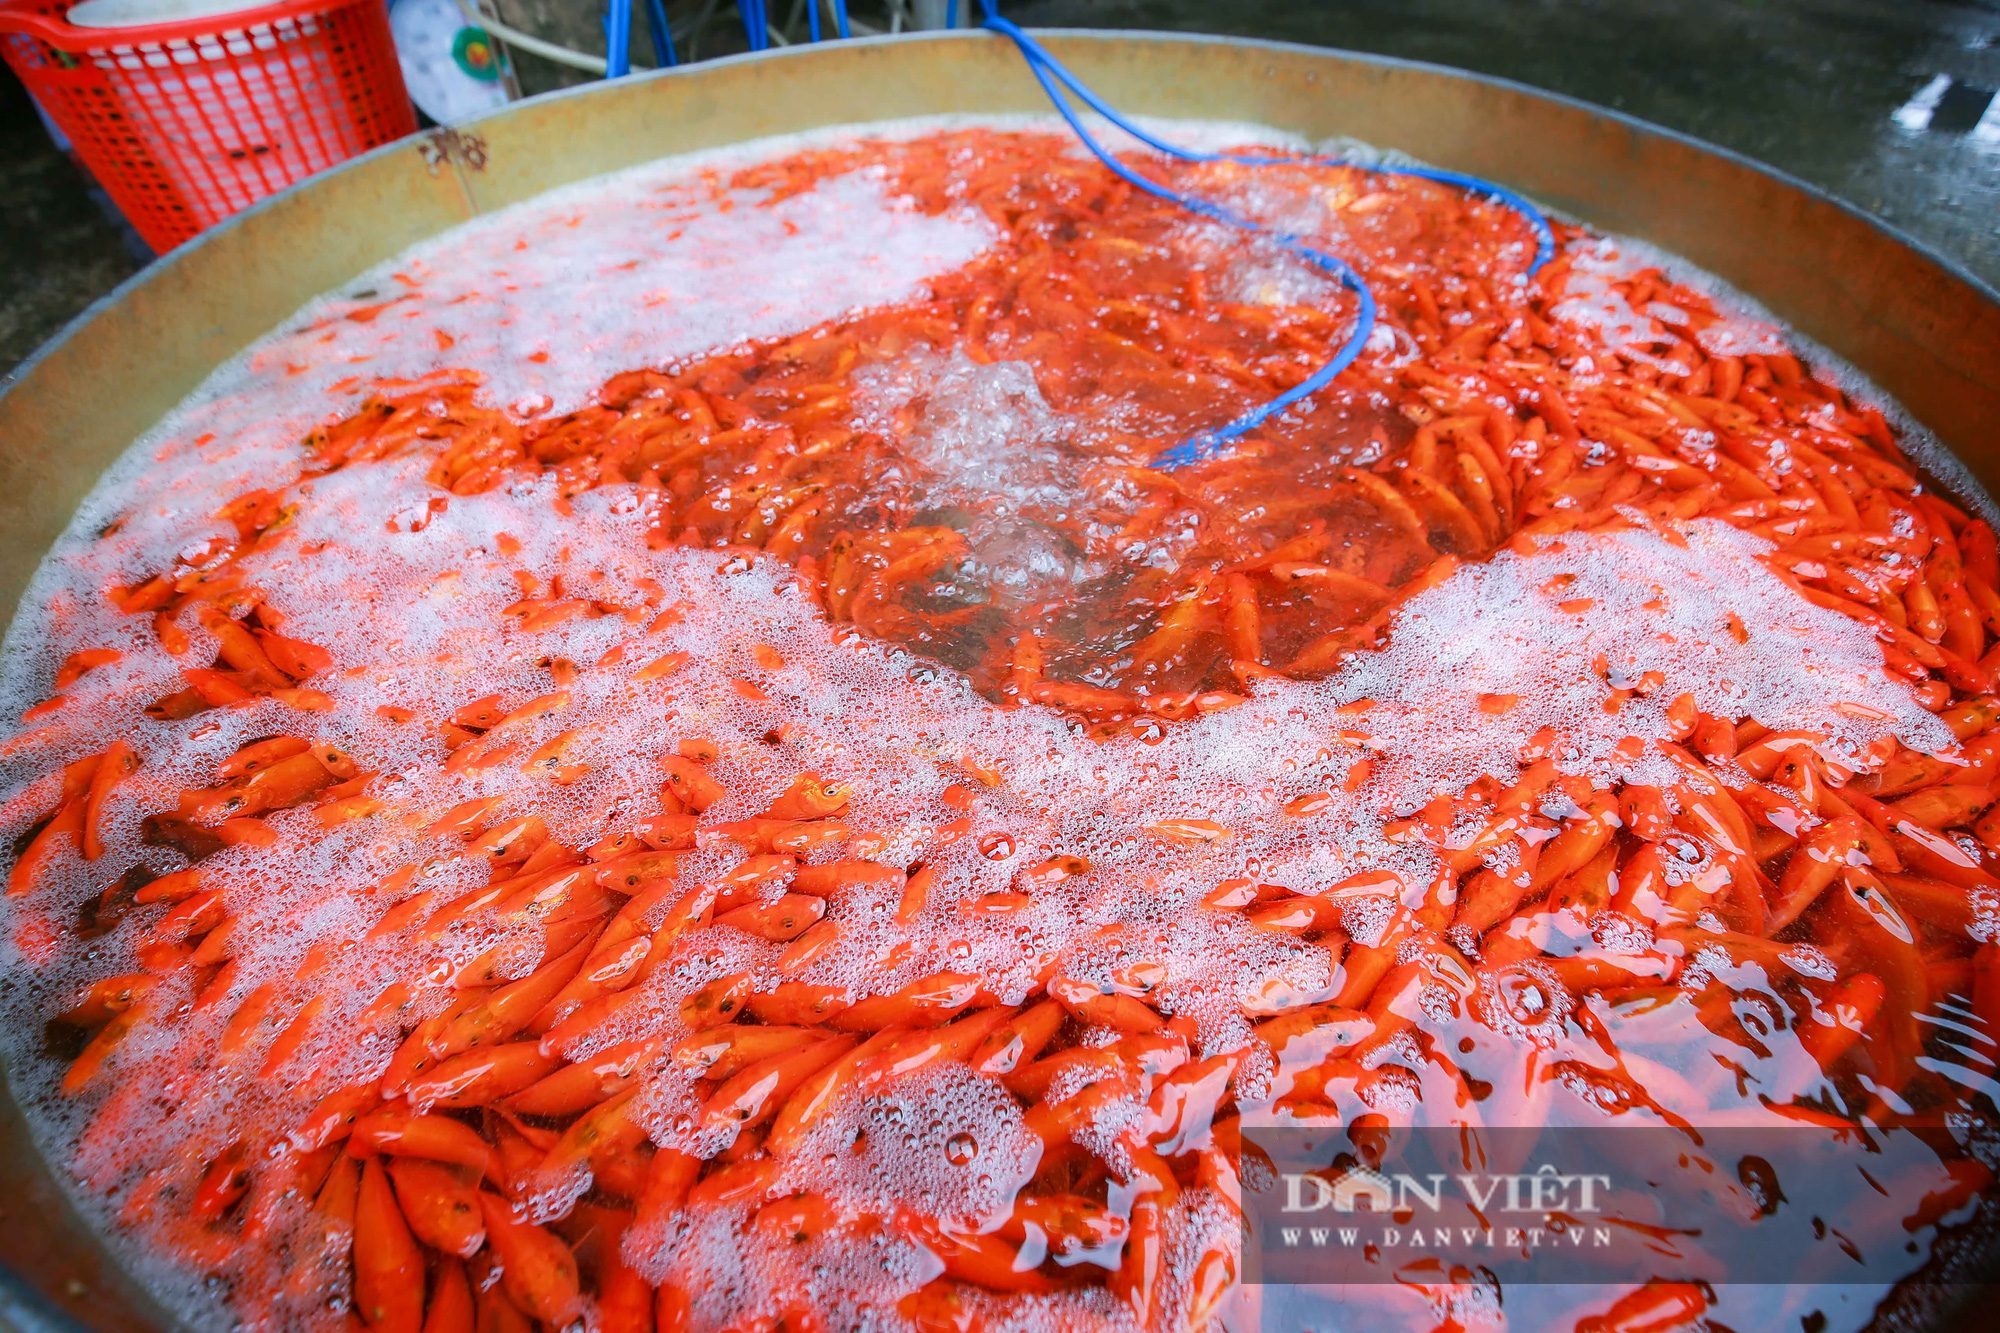 Hà Nội: Thị trường cá chép đỏ biến động mạnh vì dịch Covid-19 - Ảnh 6.